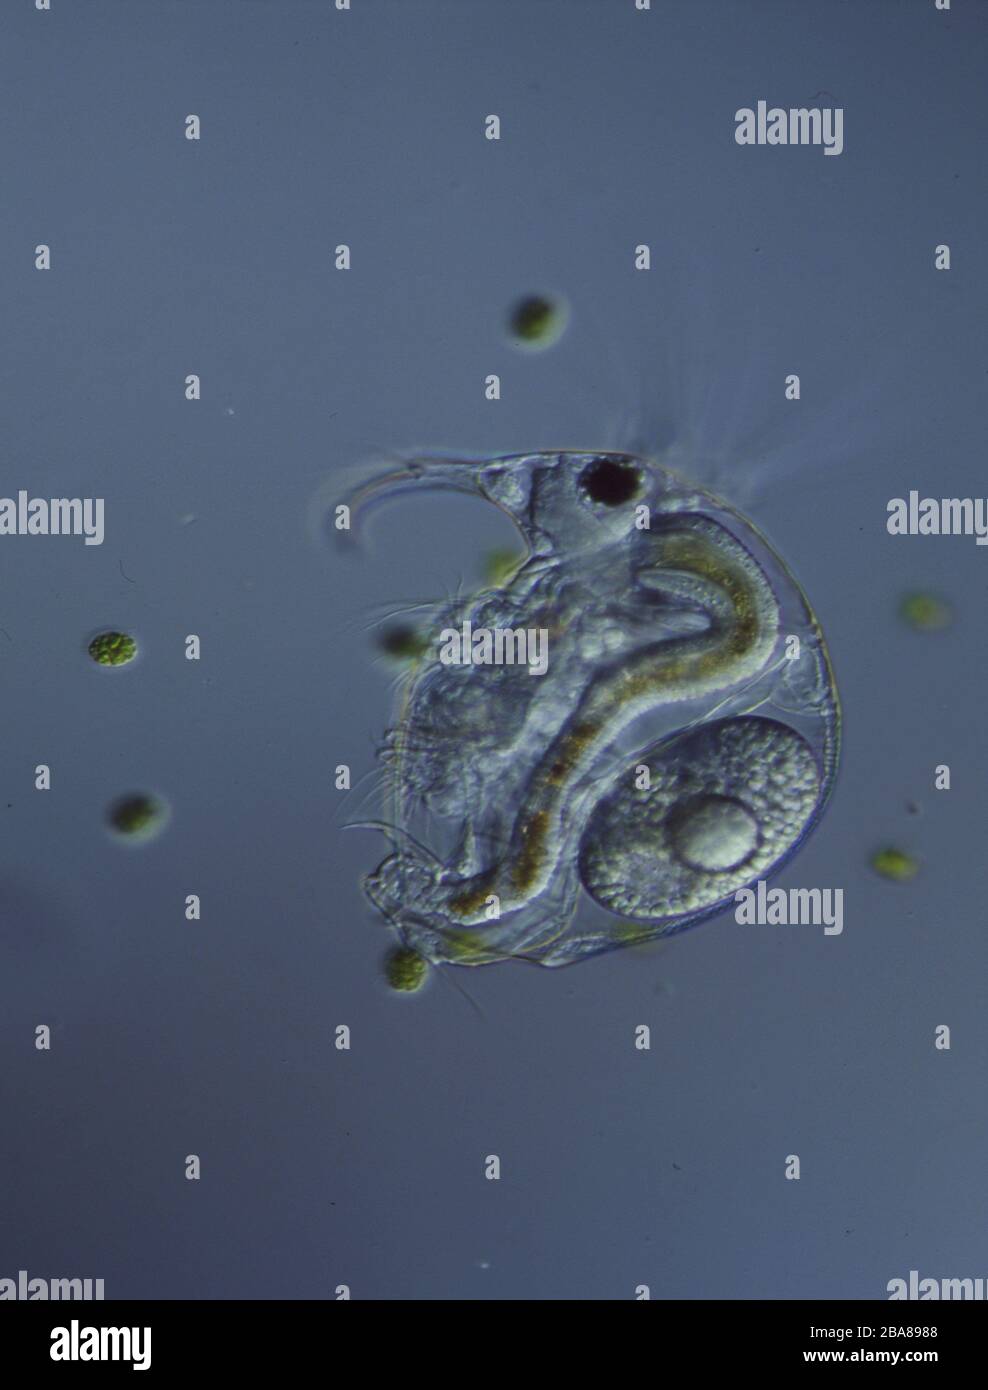 Rotationstiere unter dem Mikroskop in einem Tropfen Wasser 100x  Stockfotografie - Alamy